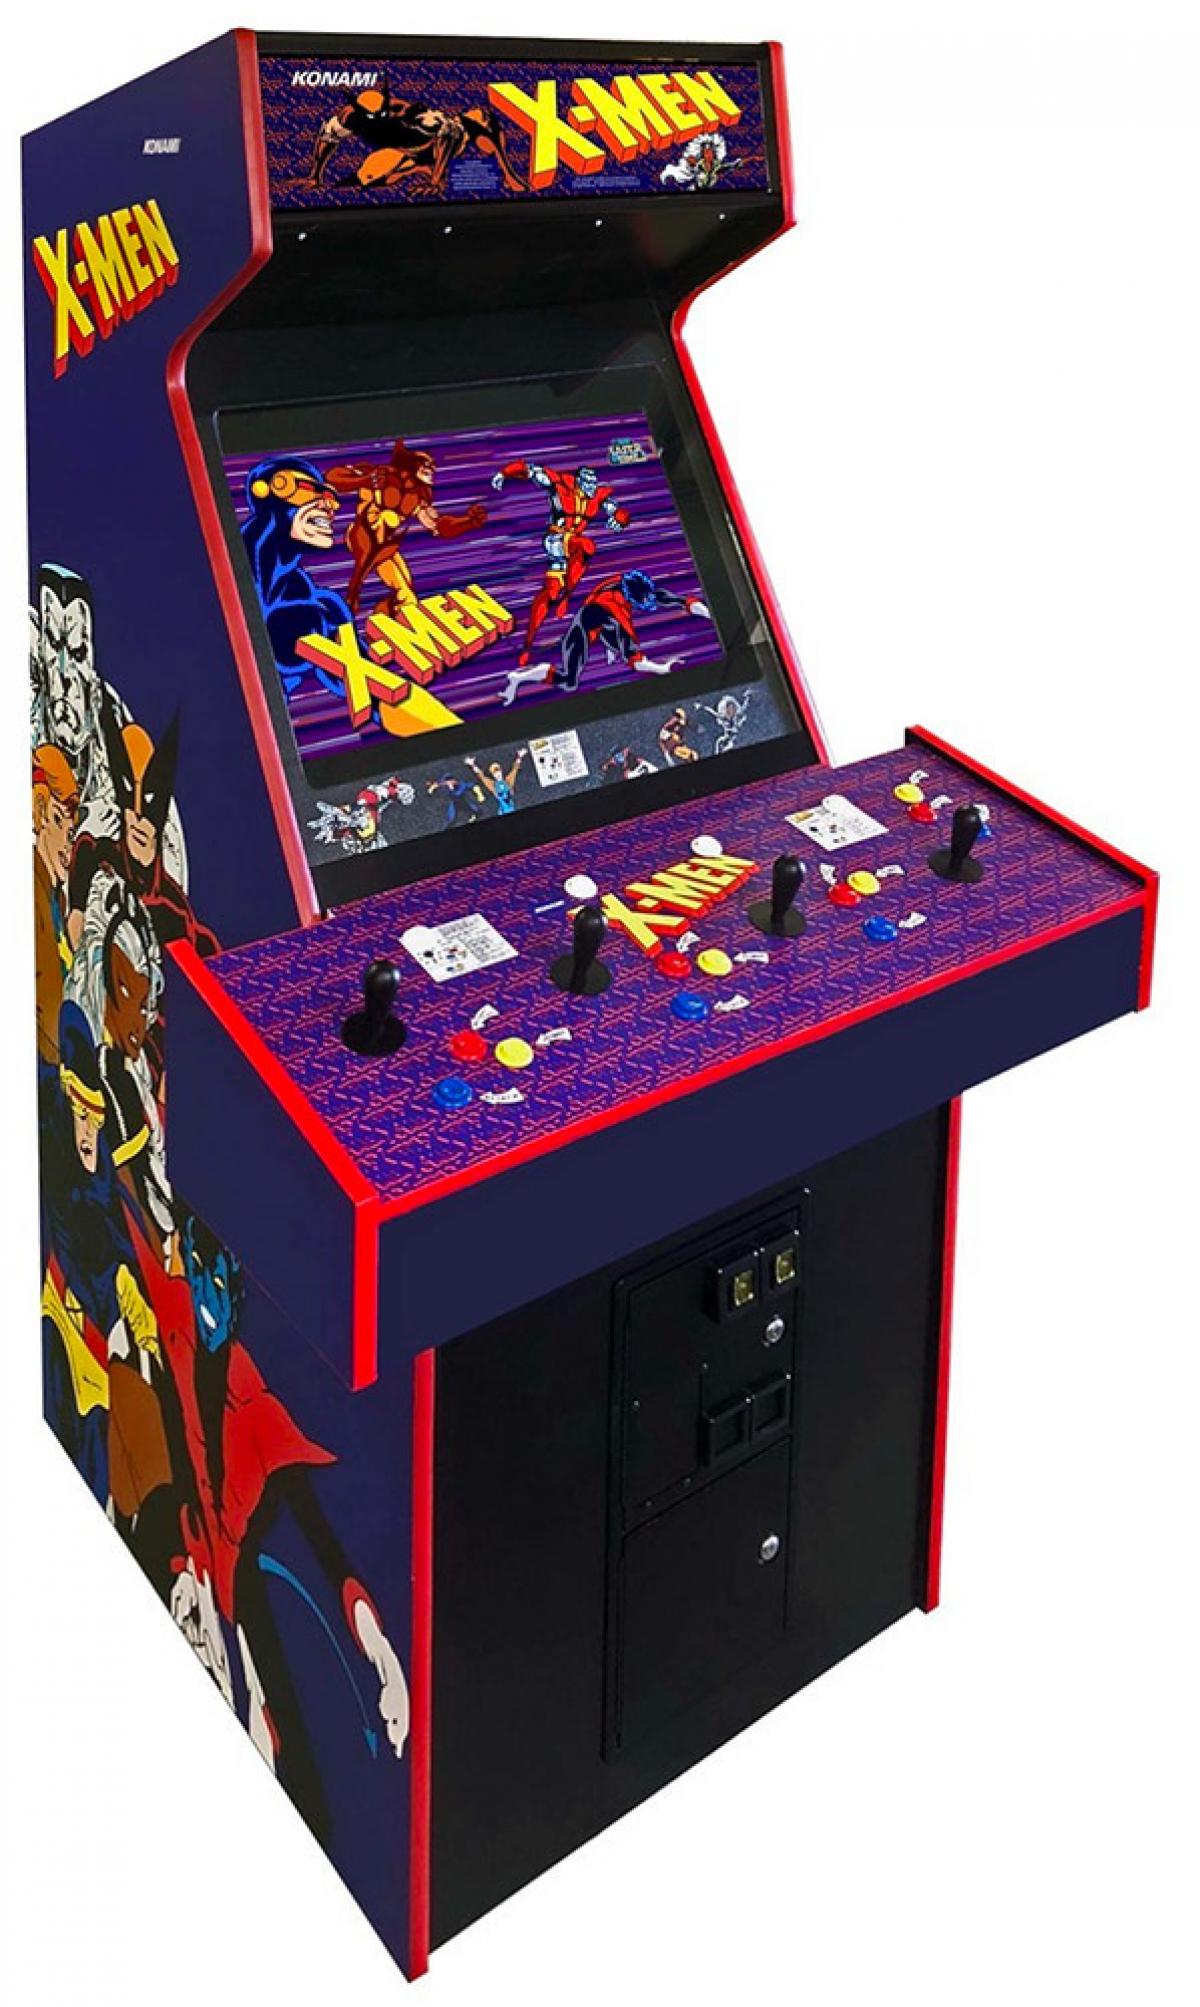 Mueble Mando Arcade controller con diseño de vinilos